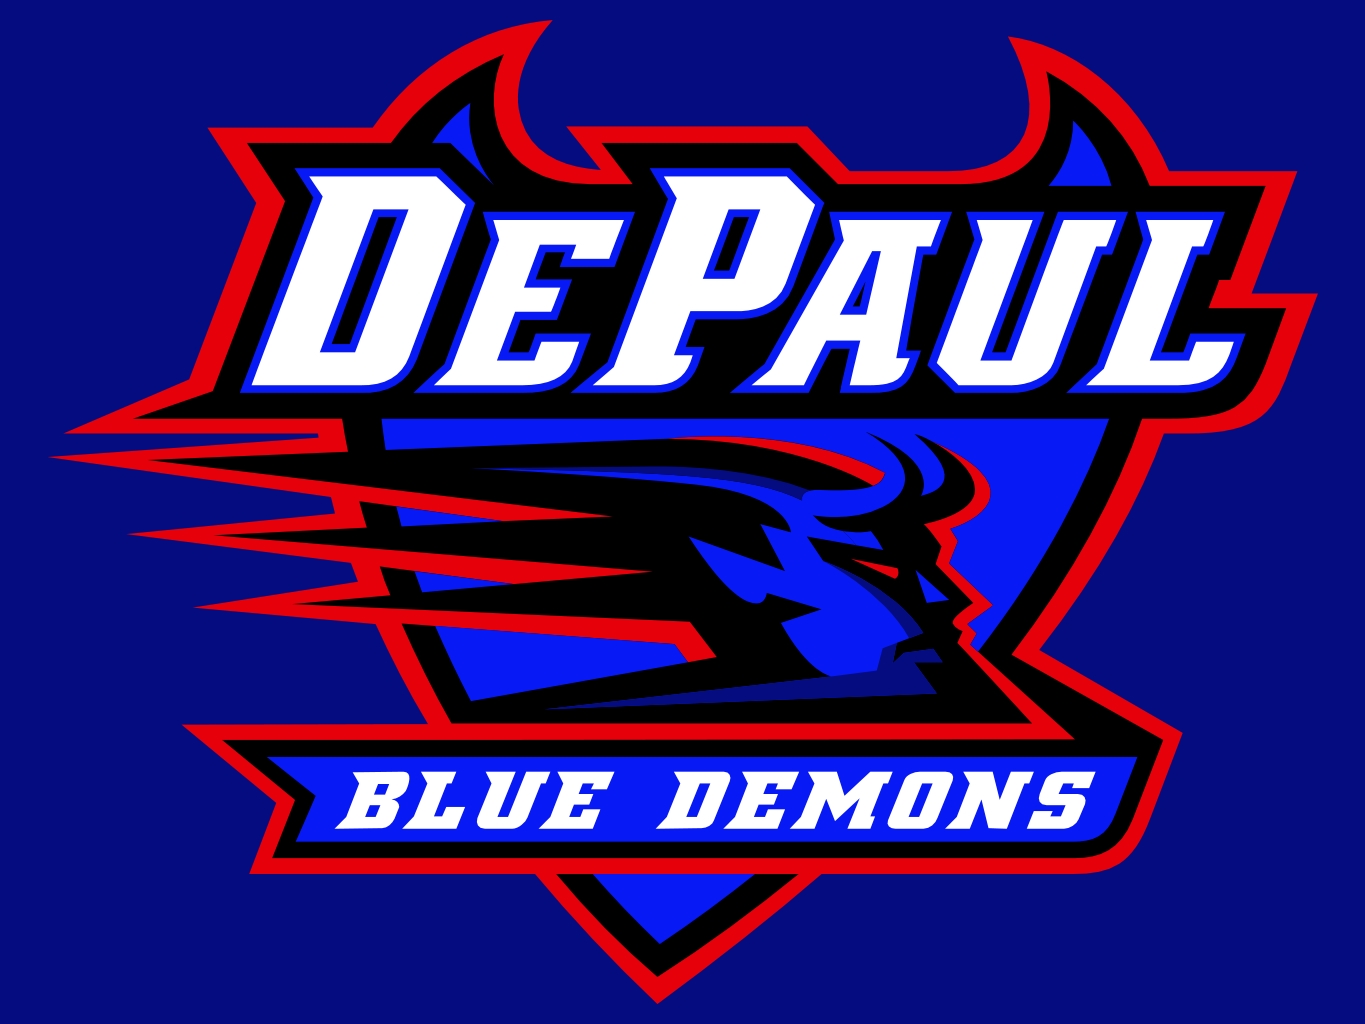 depaul blue demons logo